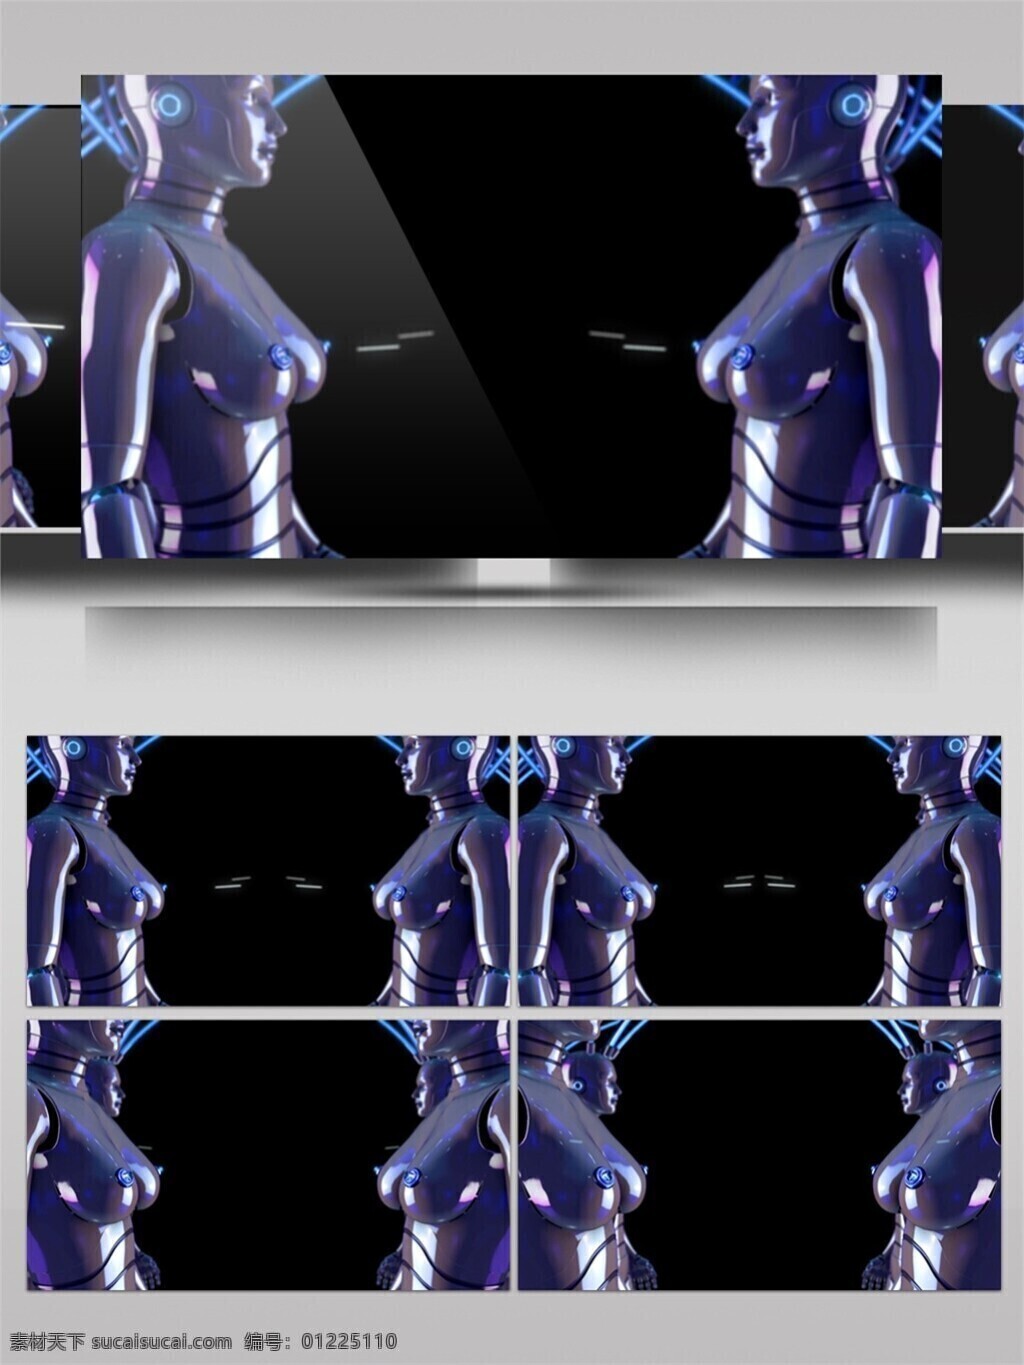 炫 酷 蓝色 机器人 视频 3d视频素材 特效视频素材 炫酷